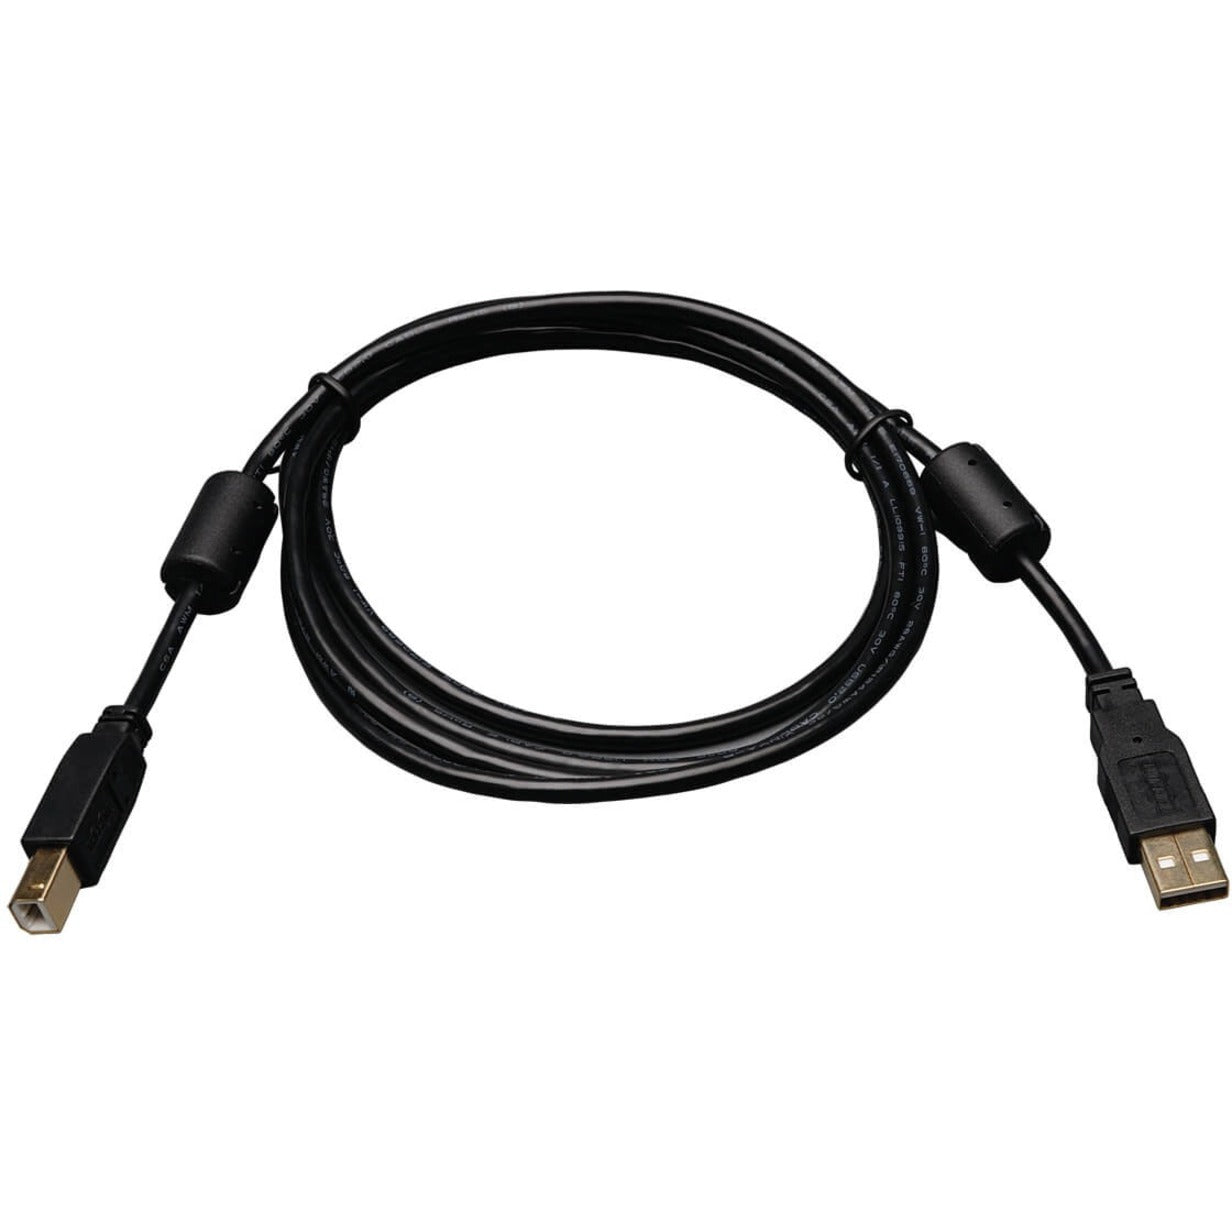 Tripp Lite U023-006 6-ft. USB2.0 A/B Gold Device Cable with Ferrite Chokes Data Transfer Cable Fuso dati con cavo per dispositivi USB2.0 A/B cavo con ferriti da 6 piedi e oro cavo di trasferimento